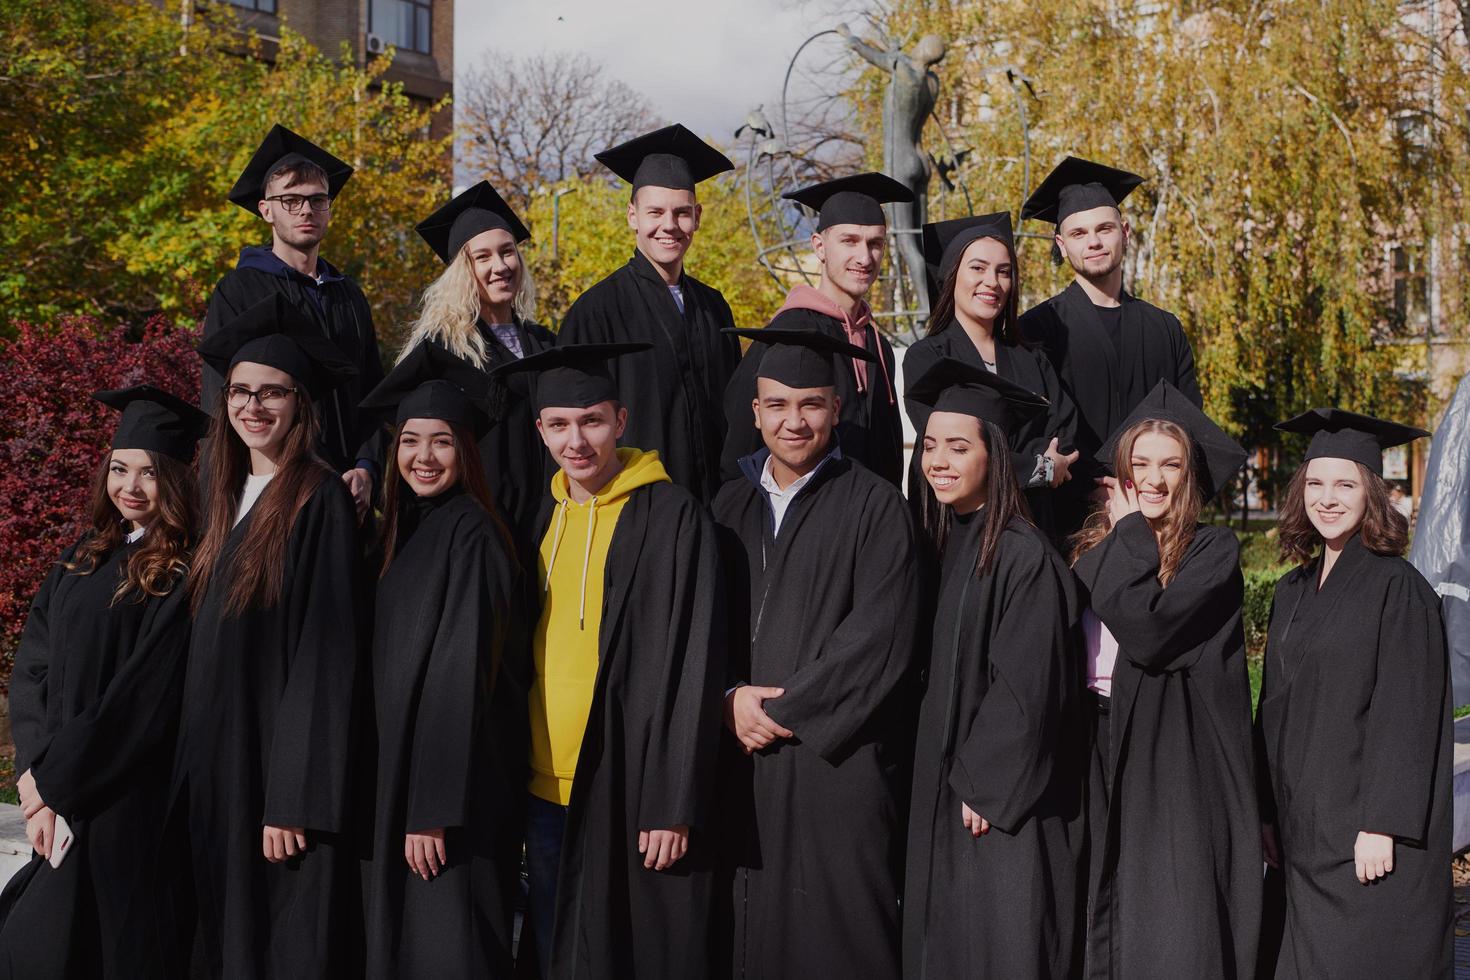 groupe d'étudiants diplômés internationaux divers célébrant photo